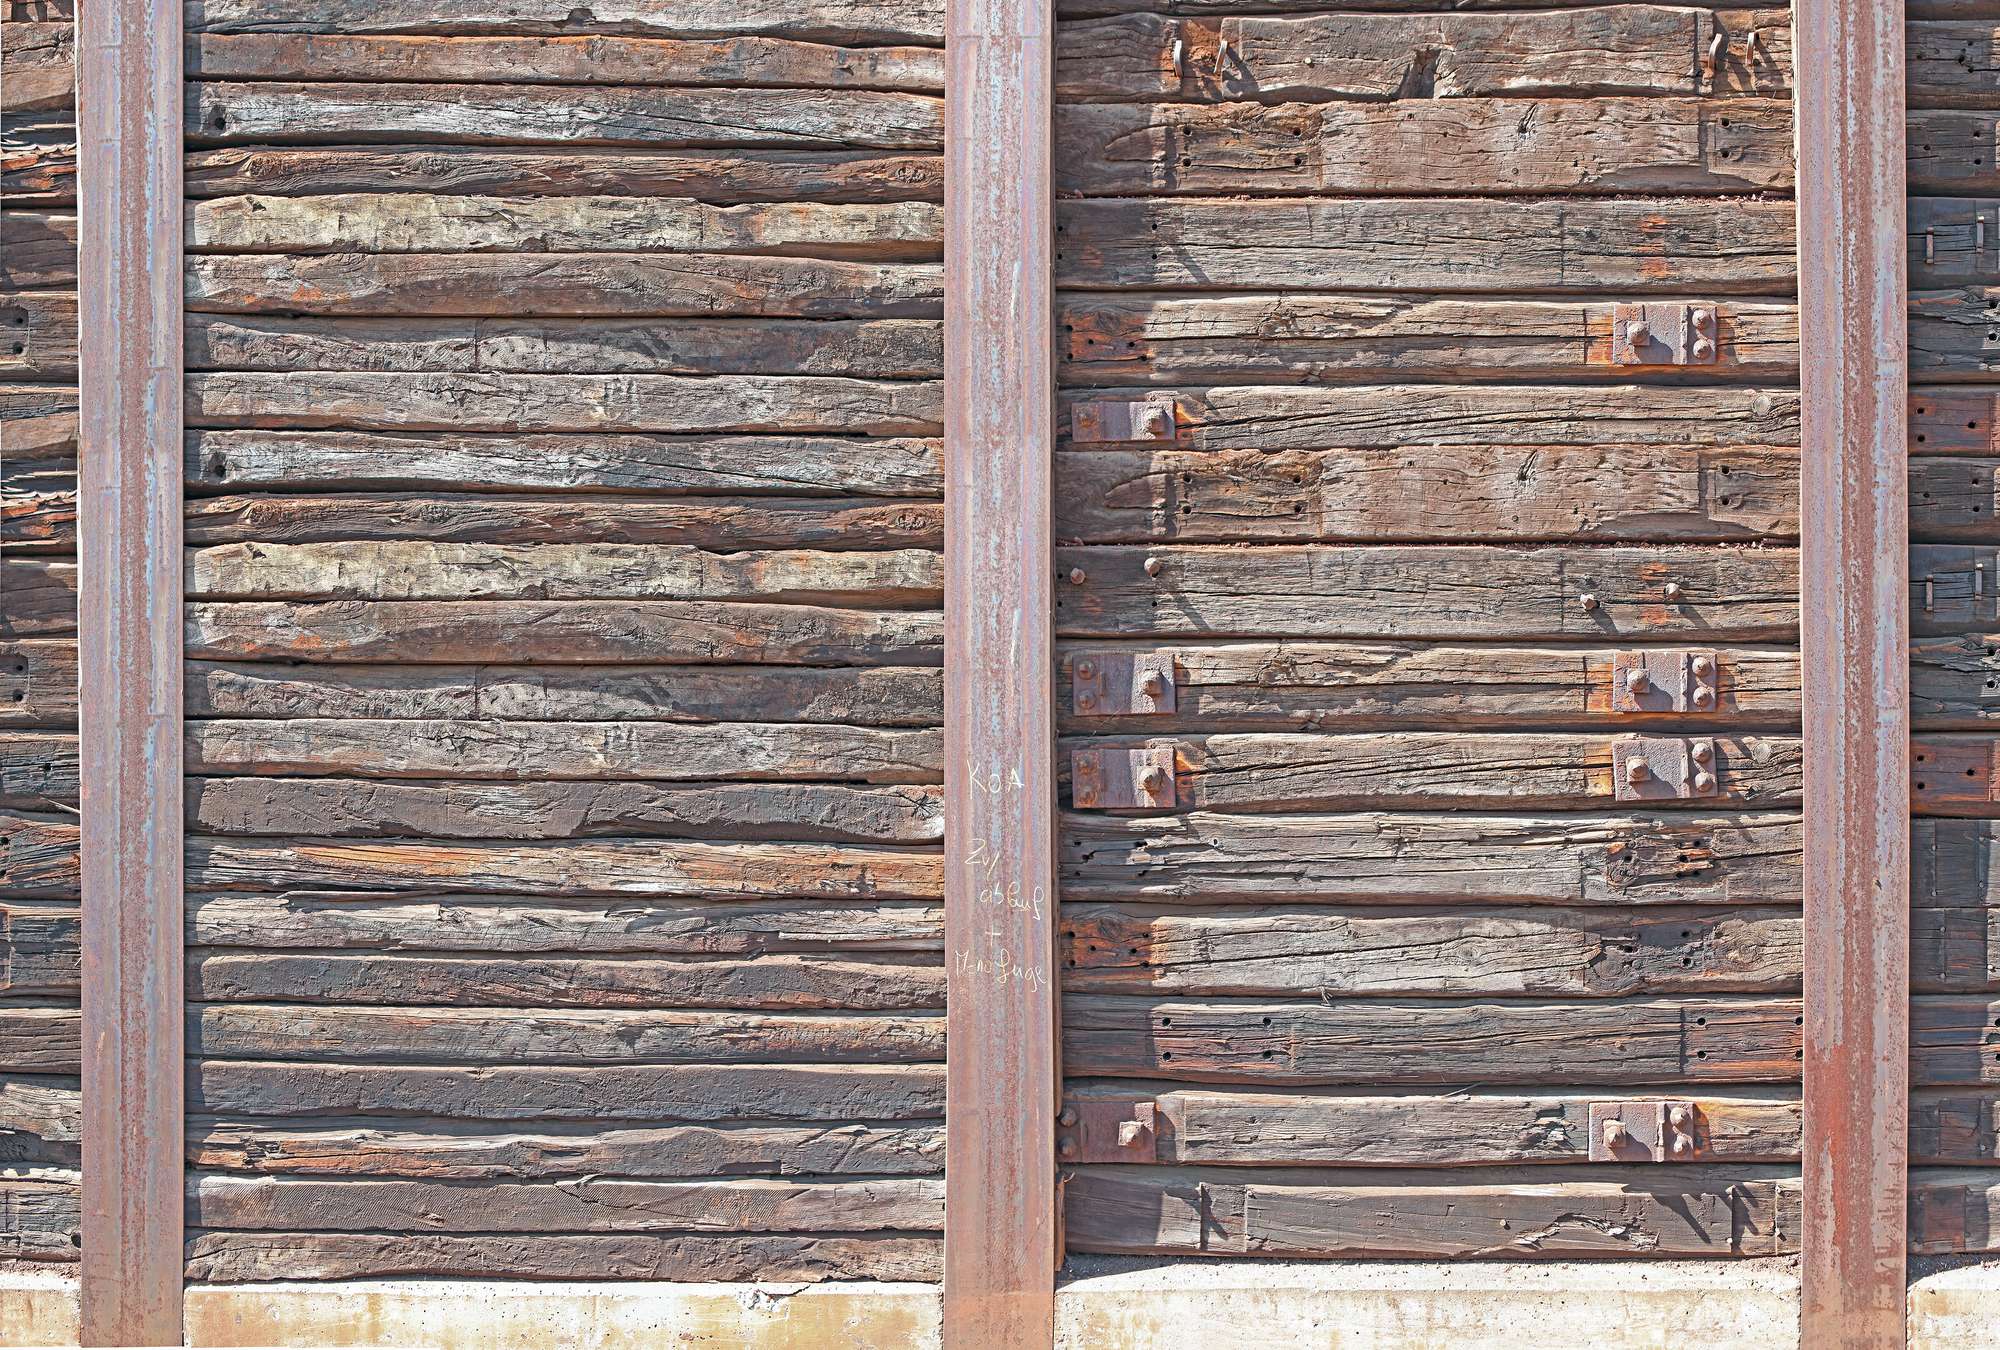             Fototapete mit rustikalen Holzbohlen zwischen Stahlträgern
        